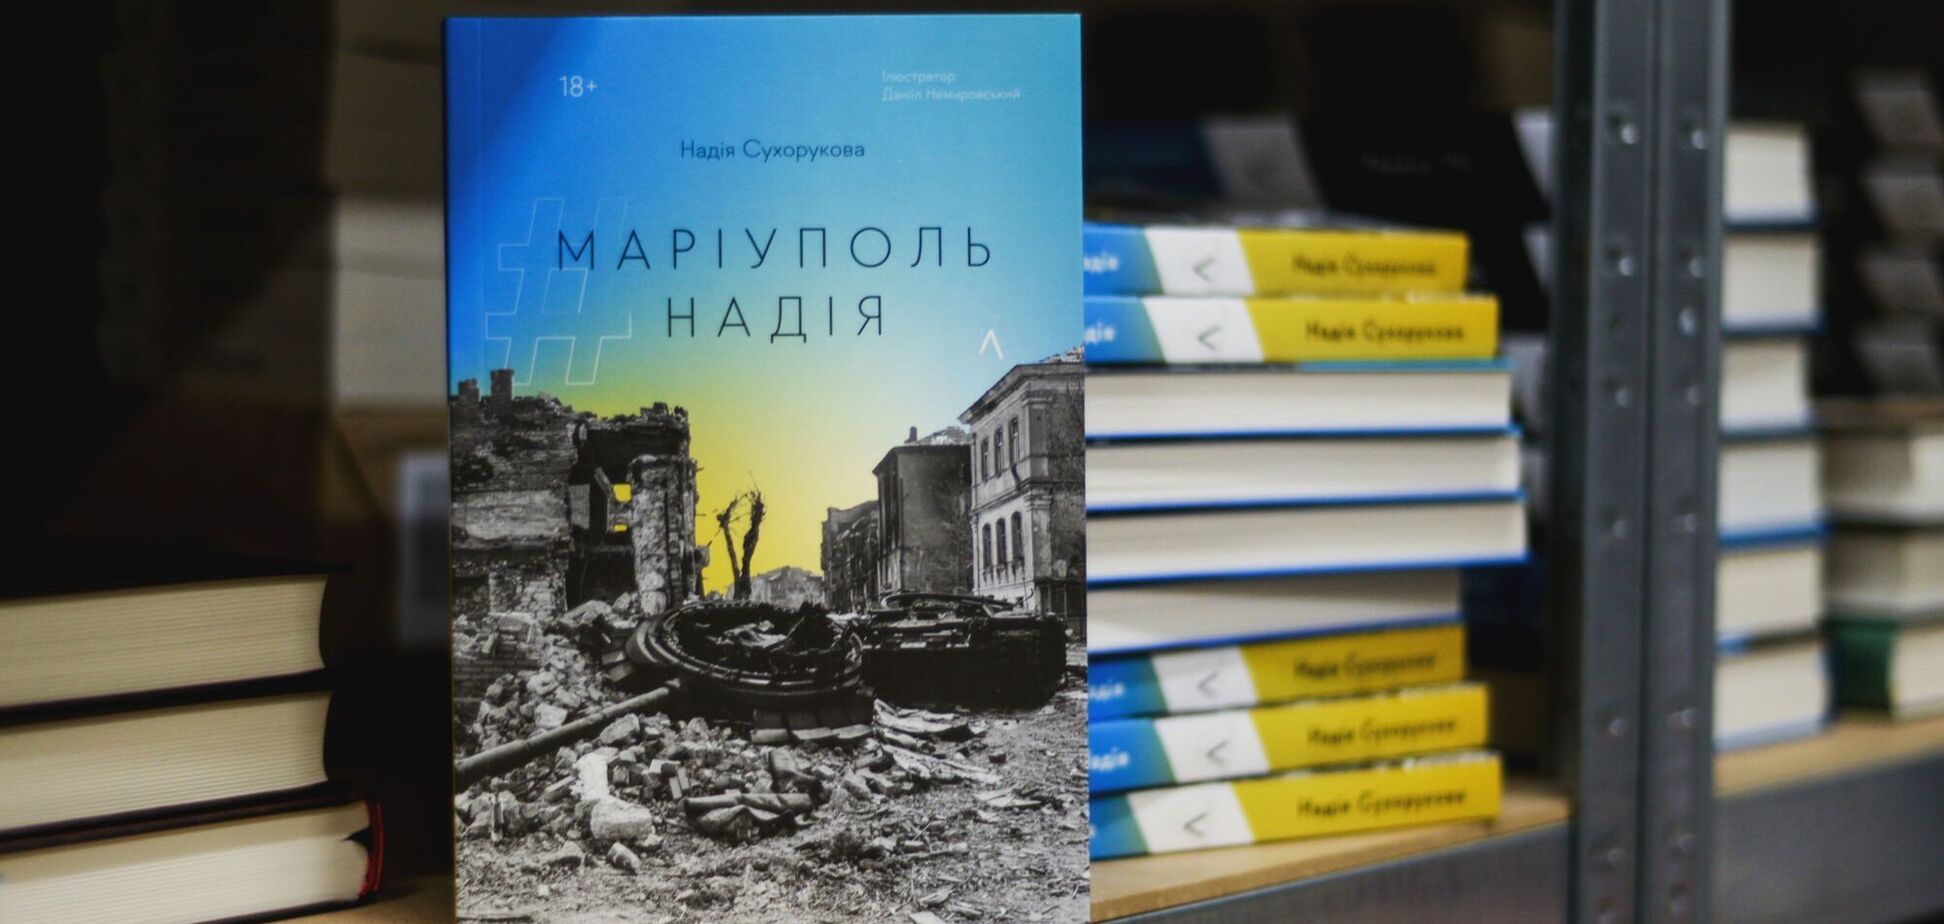 Блокадный дневник Надежды Сухоруковой издан в свет